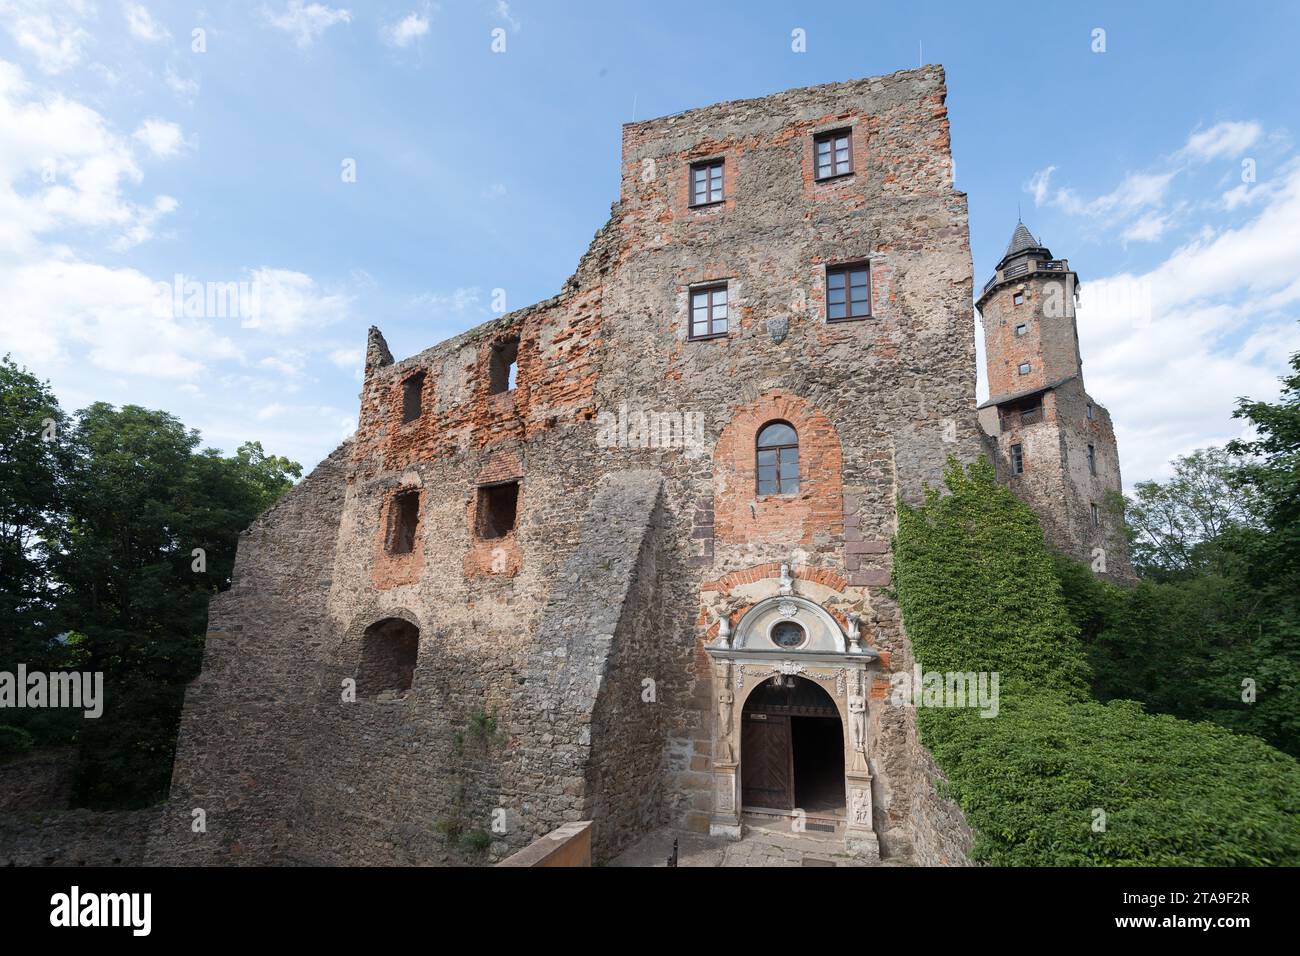 Gothic Renaissance Grodno castle in Zagorze Slaskie, Poland © Wojciech Strozyk / Alamy Stock Photo Stock Photo